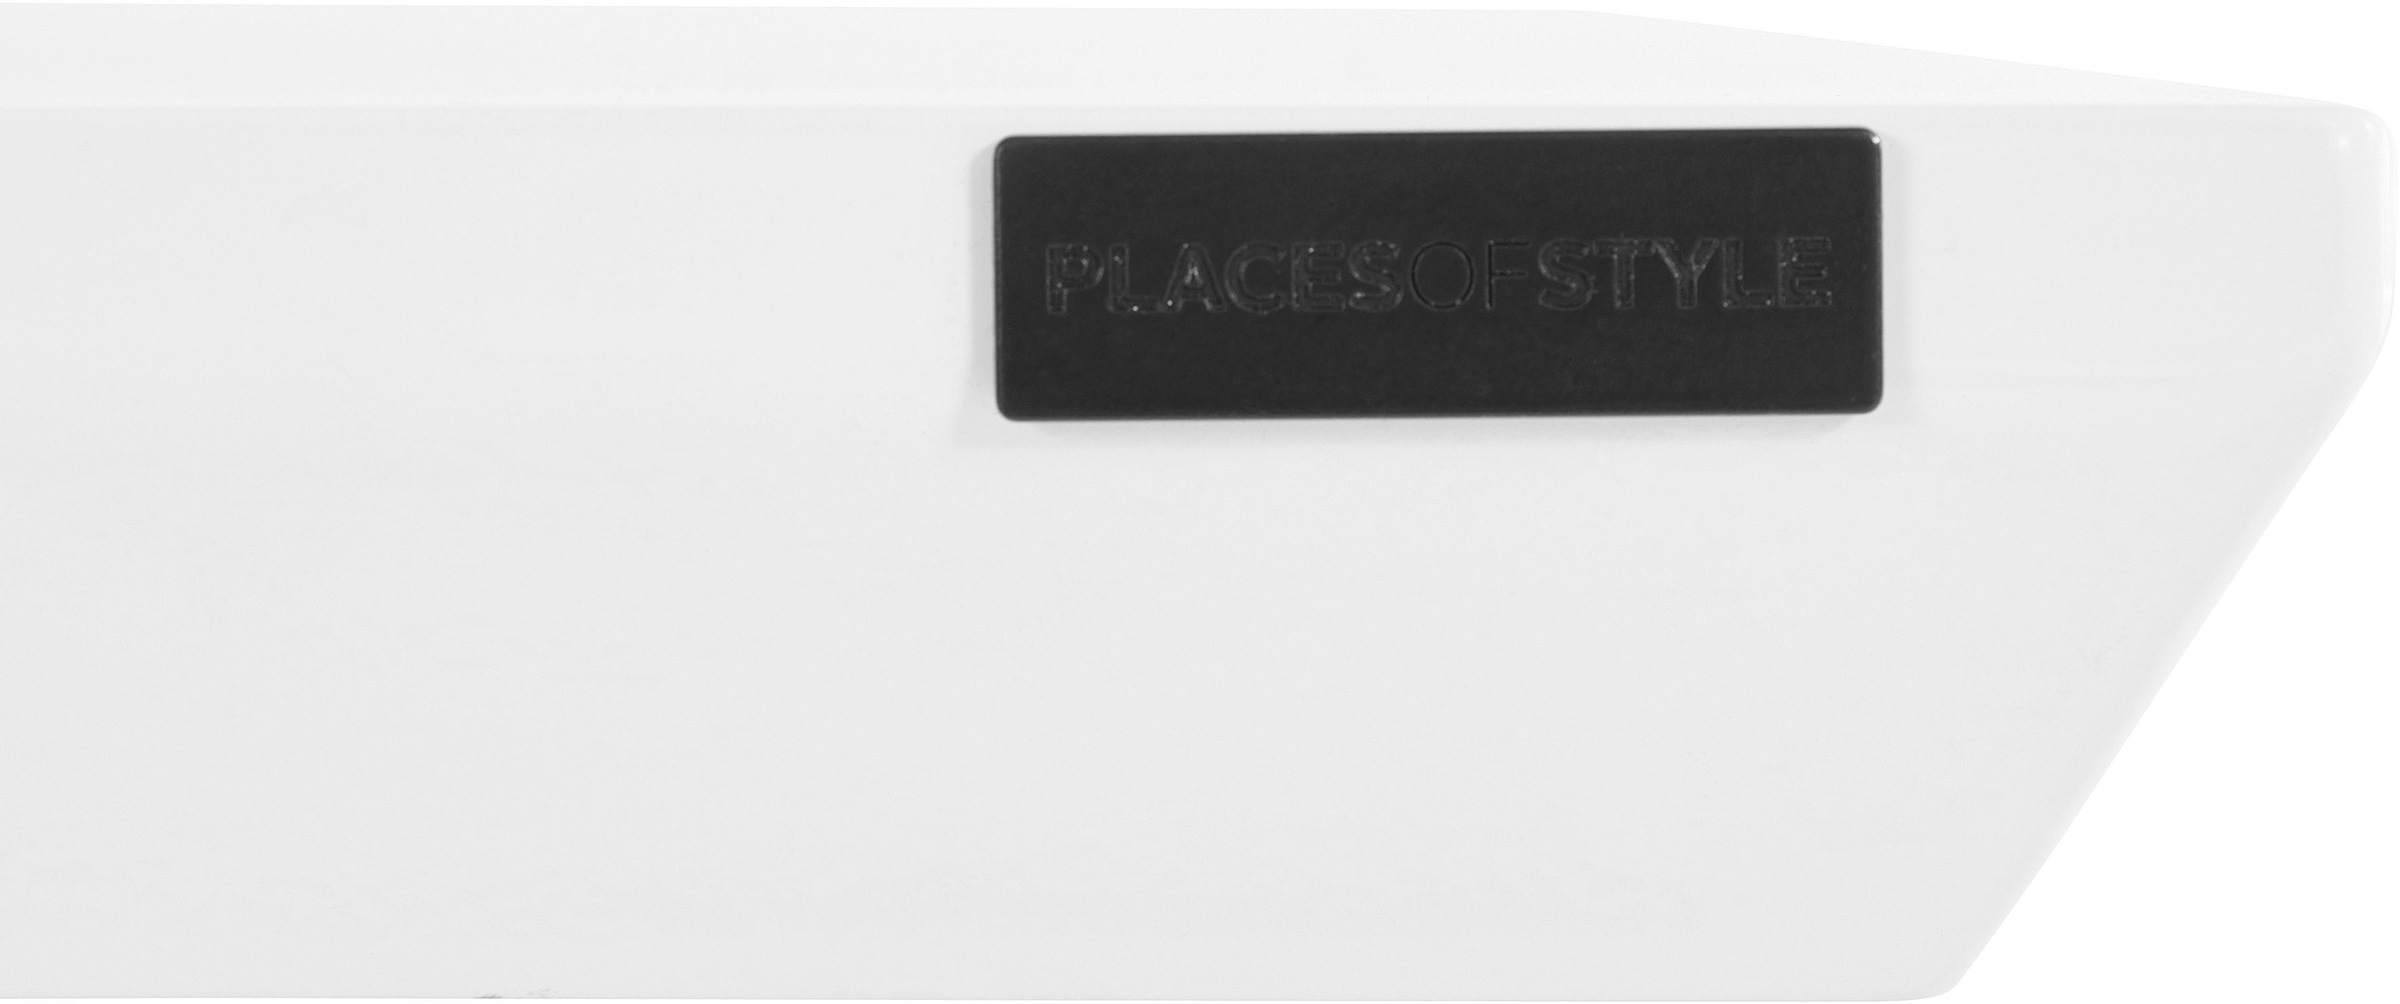 Places of Style Esstisch »Annapolis«, in weiß hochglänzend, in verschiedenen Größen erhältlich, Höhe 77,5 cm